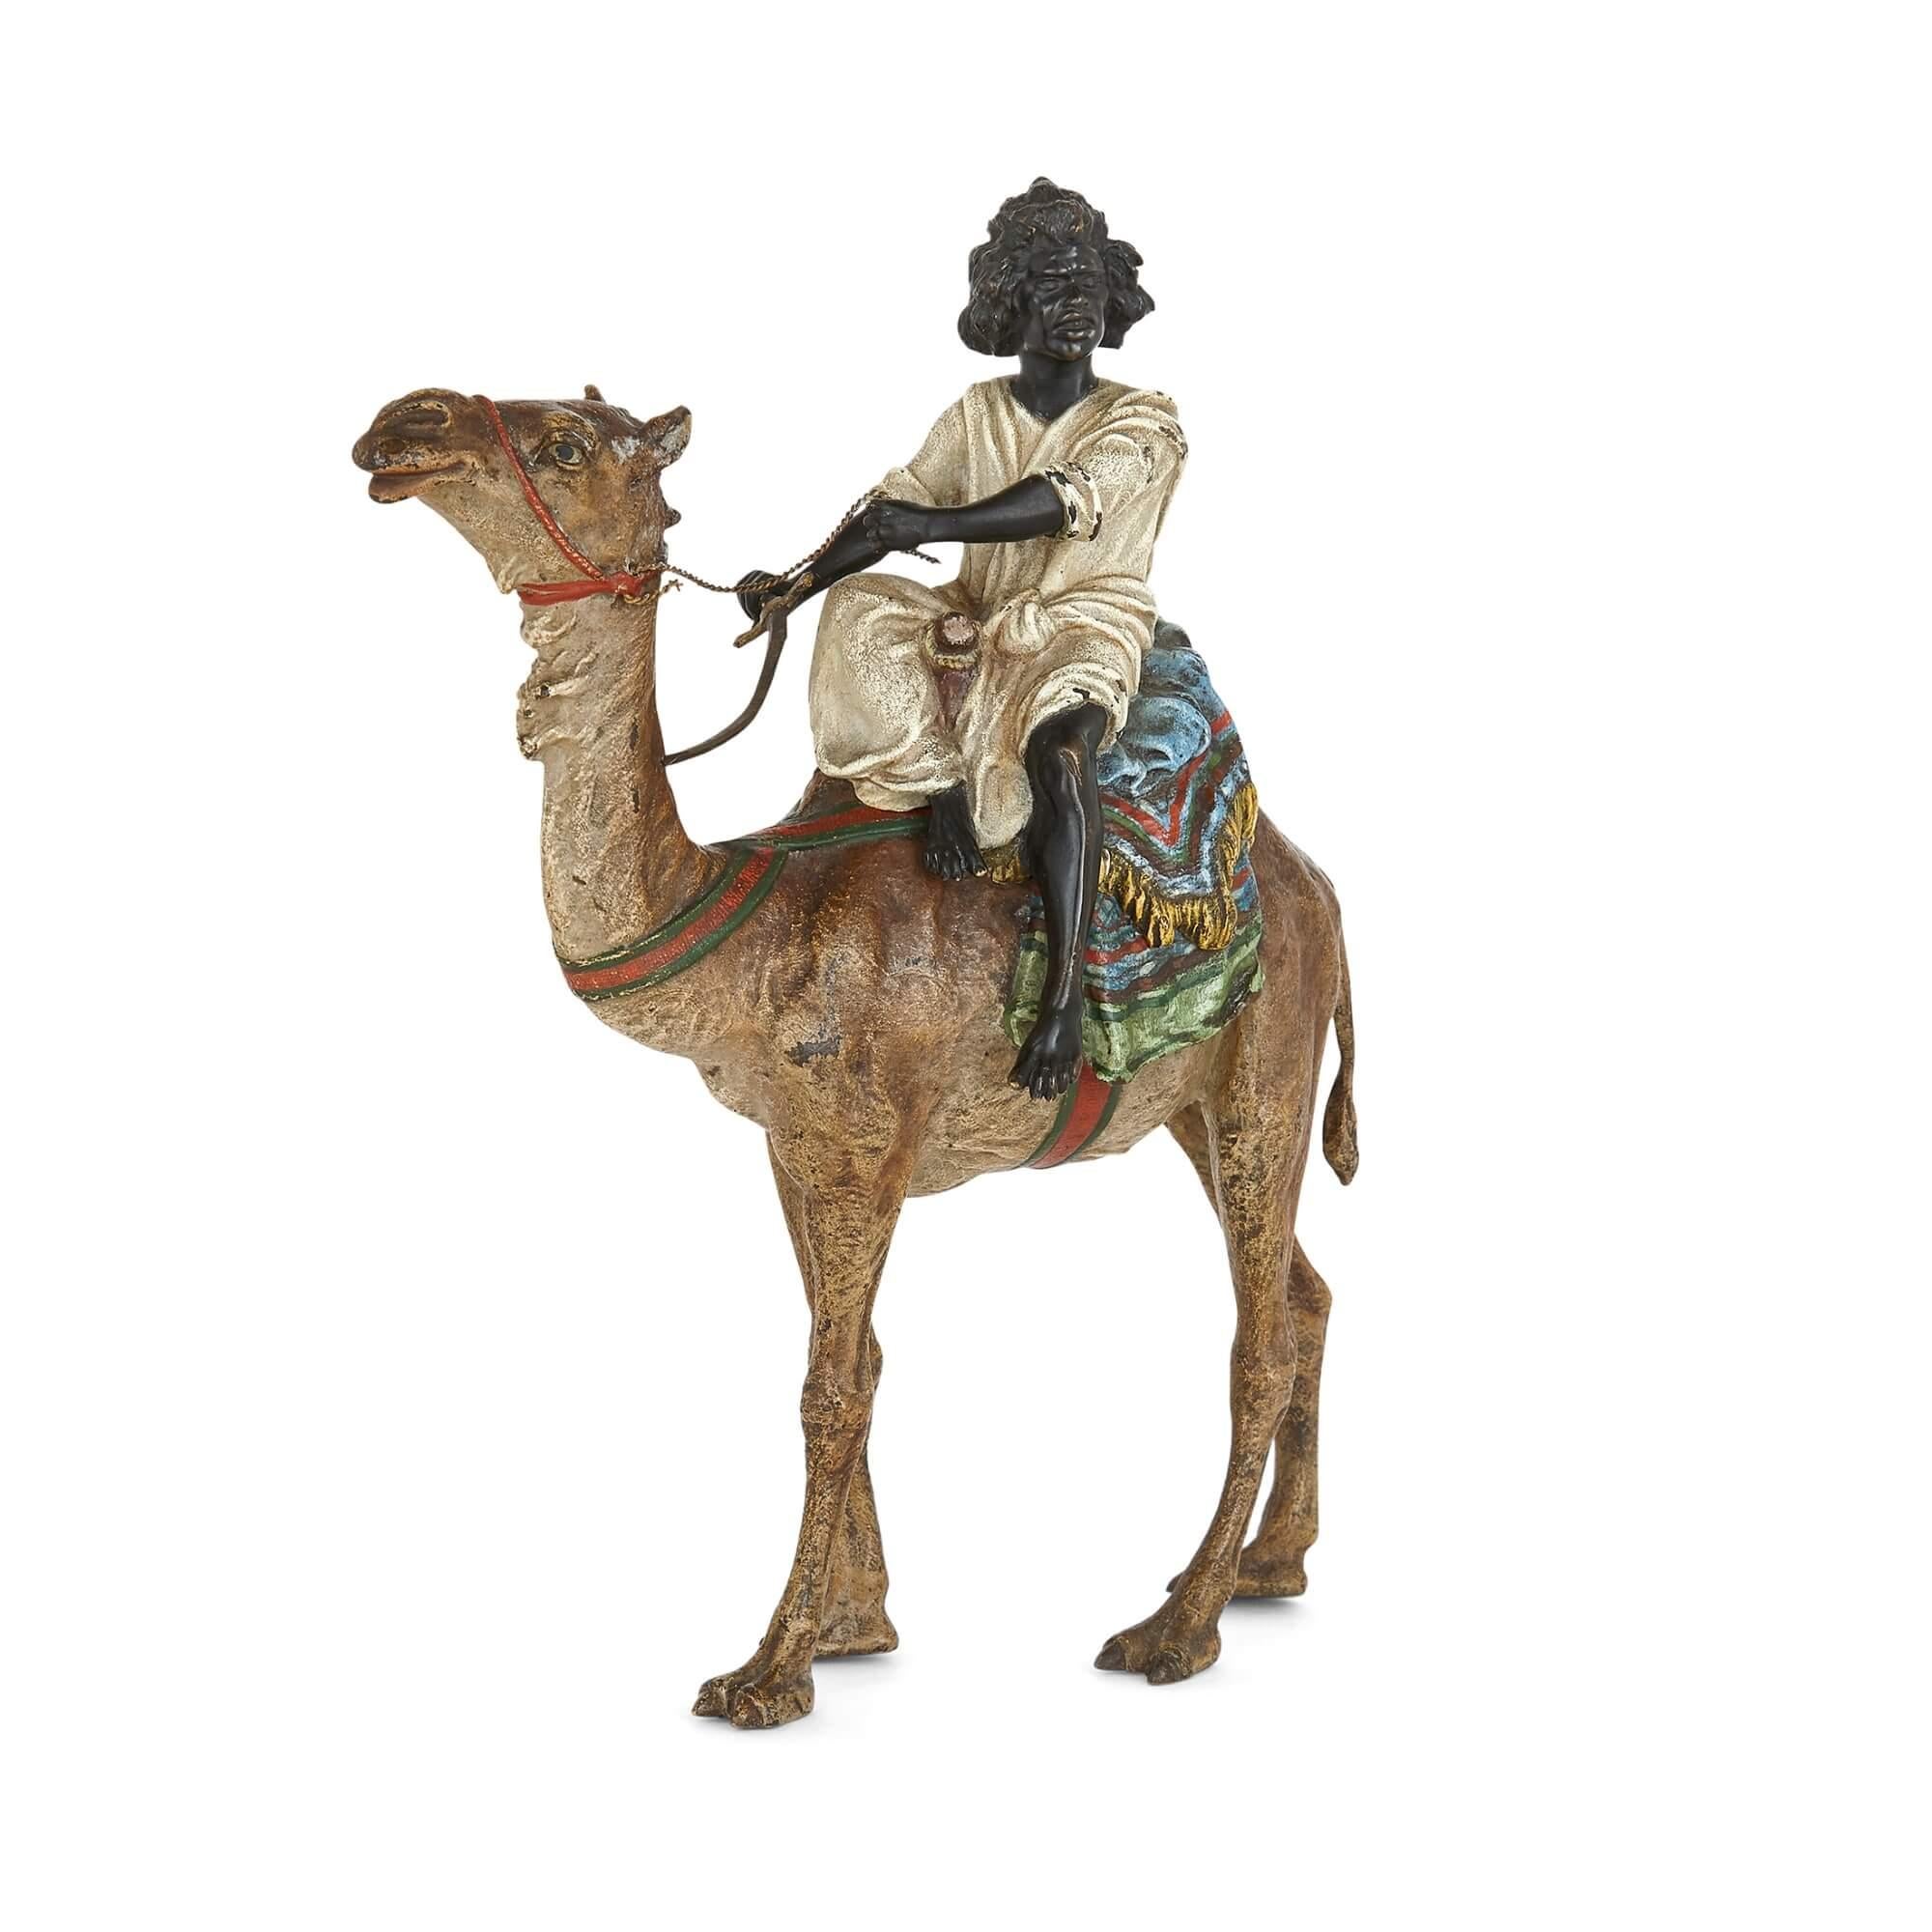 Kaltgemalte Bronze eines Kamels von Franz Xaver Bergman
Österreicher, um 1910
Maße: Höhe 21cm, Breite 18cm, Tiefe 7cm

Diese Bronzeskulptur eines Kamels und seines Reiters verkörpert das Beste von Bergman. Das Kamel ist ein hervorragendes Stück